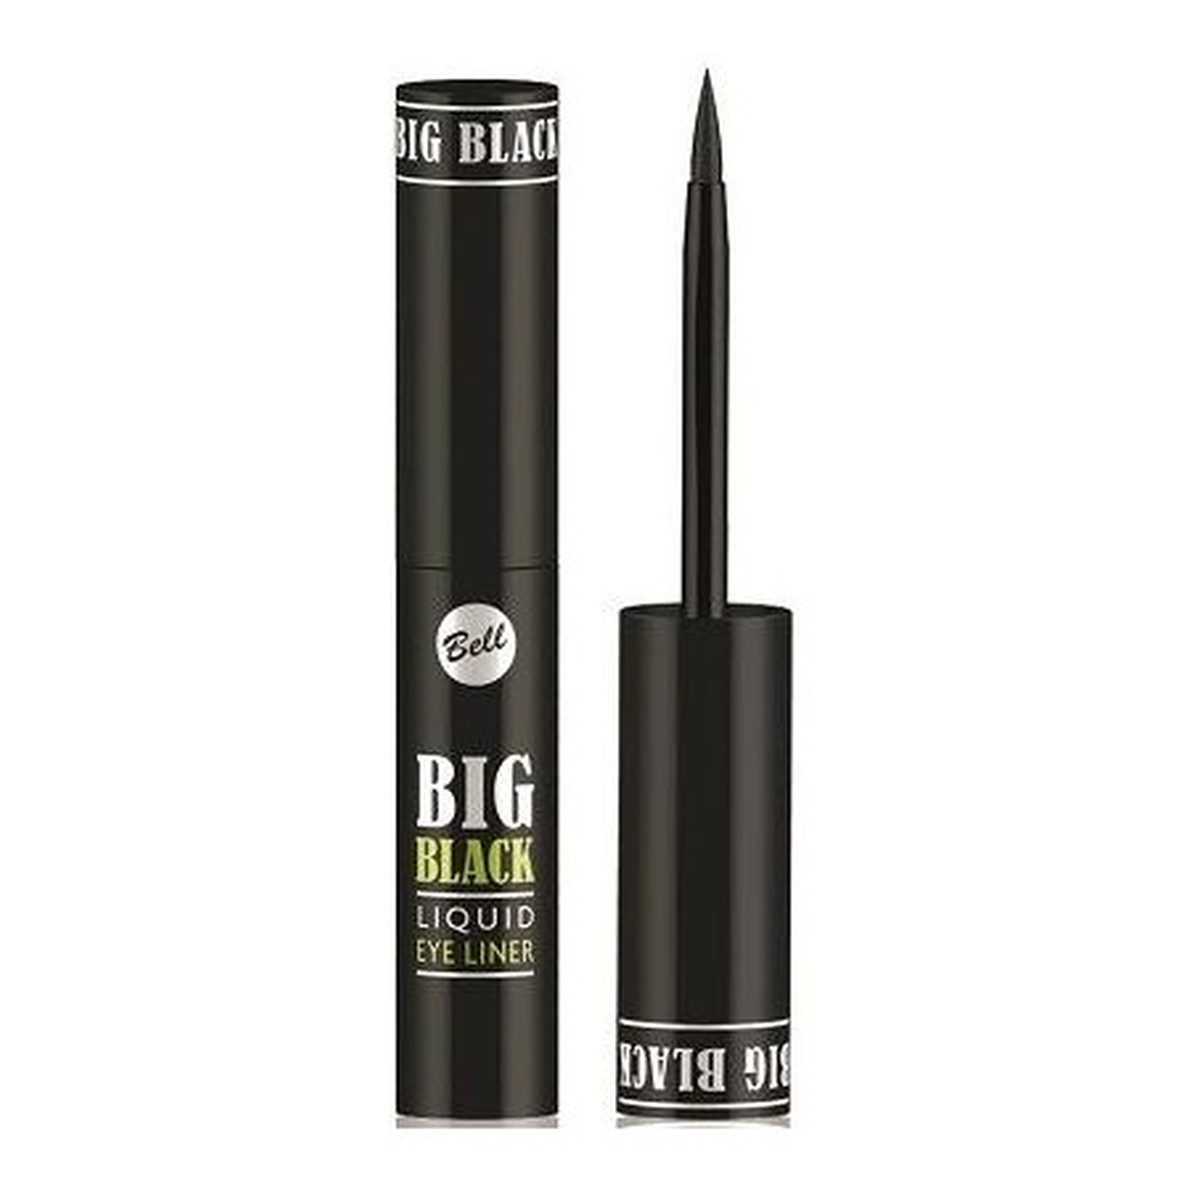 Bell Big Black Liquid Eyeliner 2ml